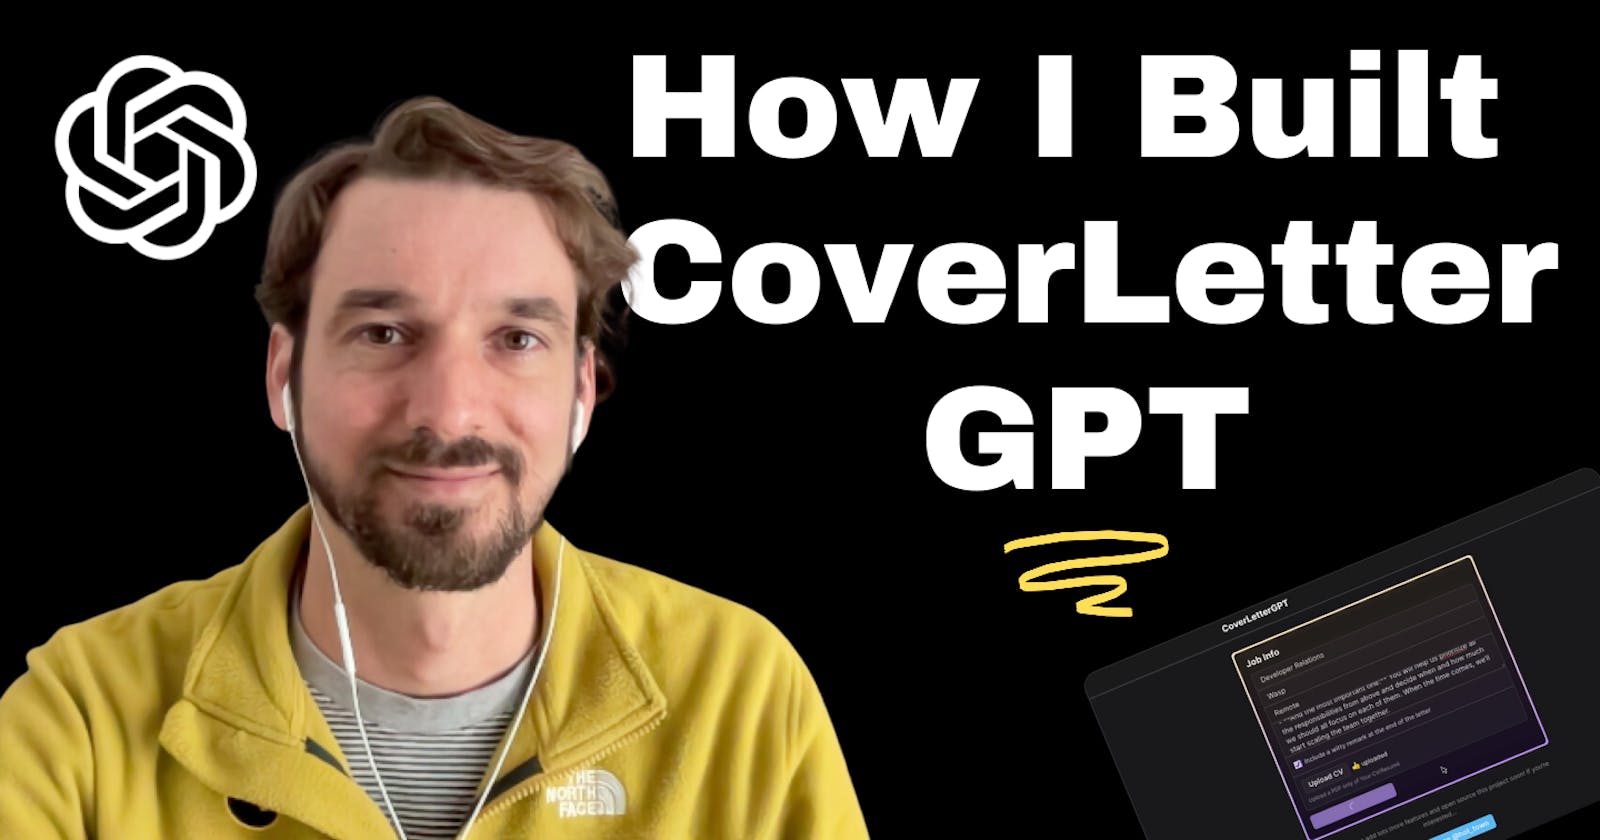 How I Built CoverLetterGPT — Code Walkthrough